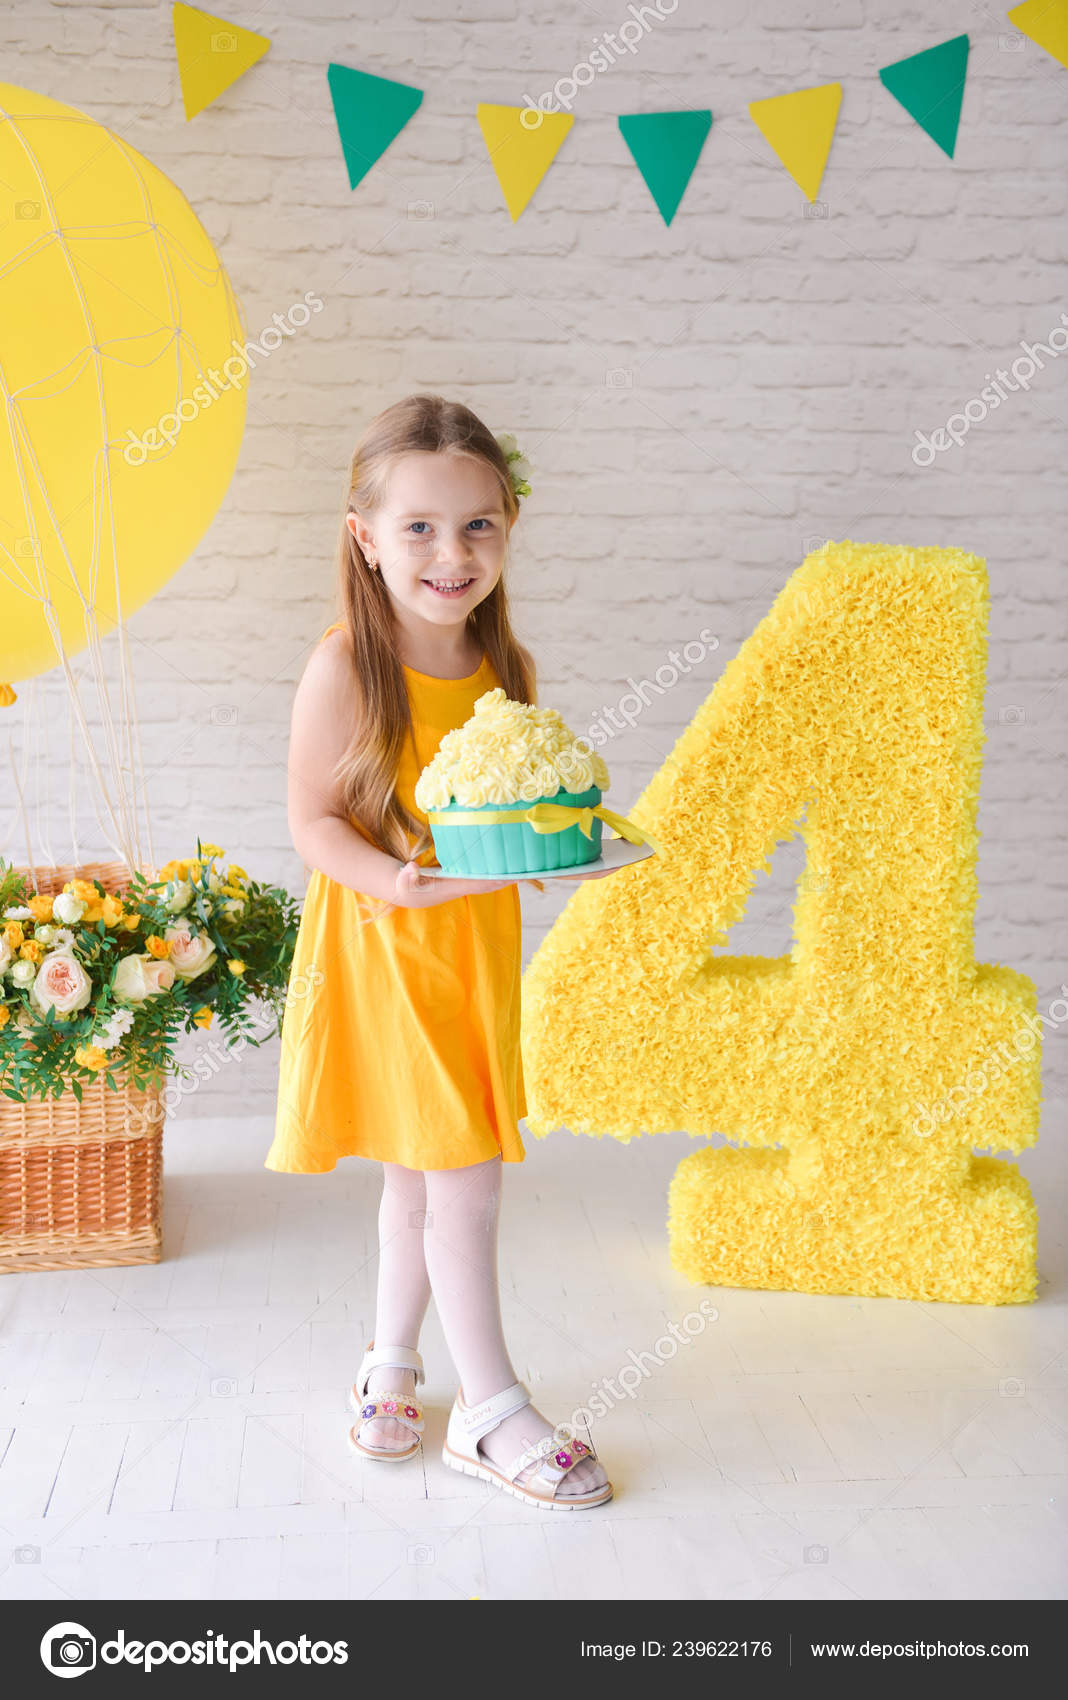 Chica de cumpleaños 4-5 años de edad está celebrando el cumpleaños